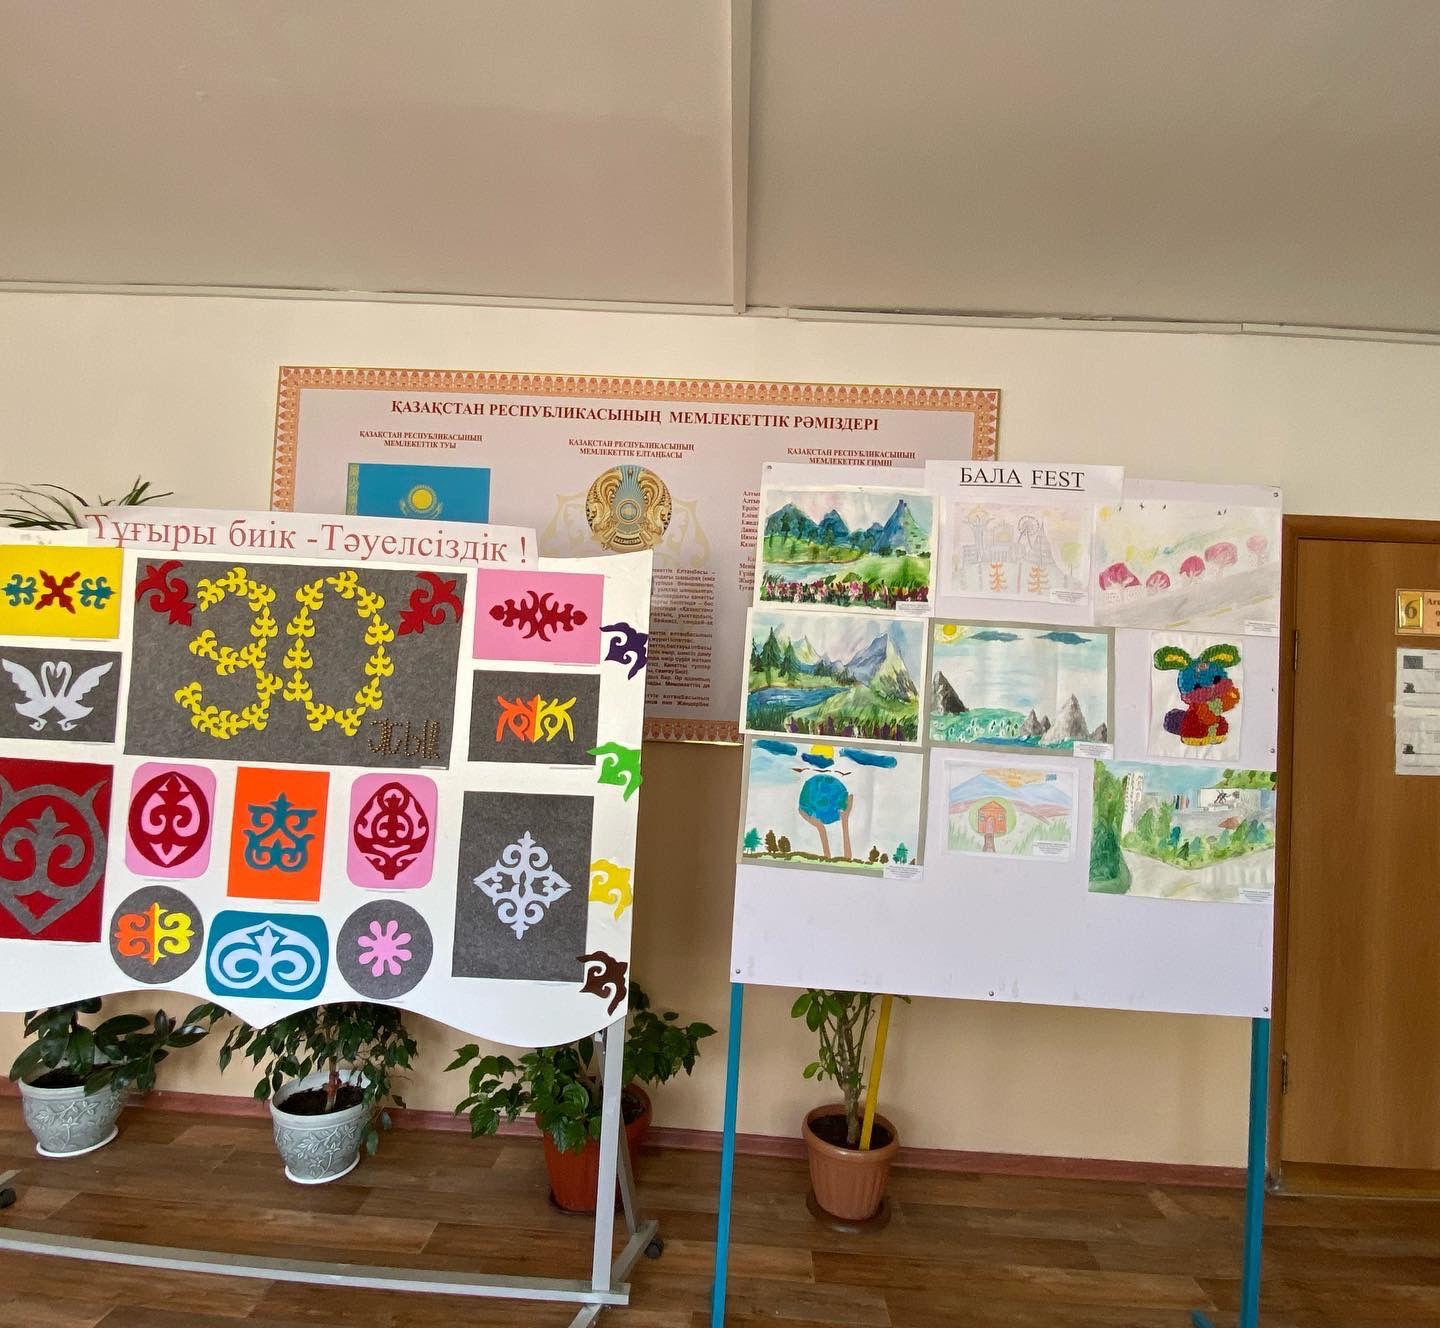 БАЛАFEST балалар фестиваліне орай ұйымдастырылған Бояулар құпиясы арт-көрмесі